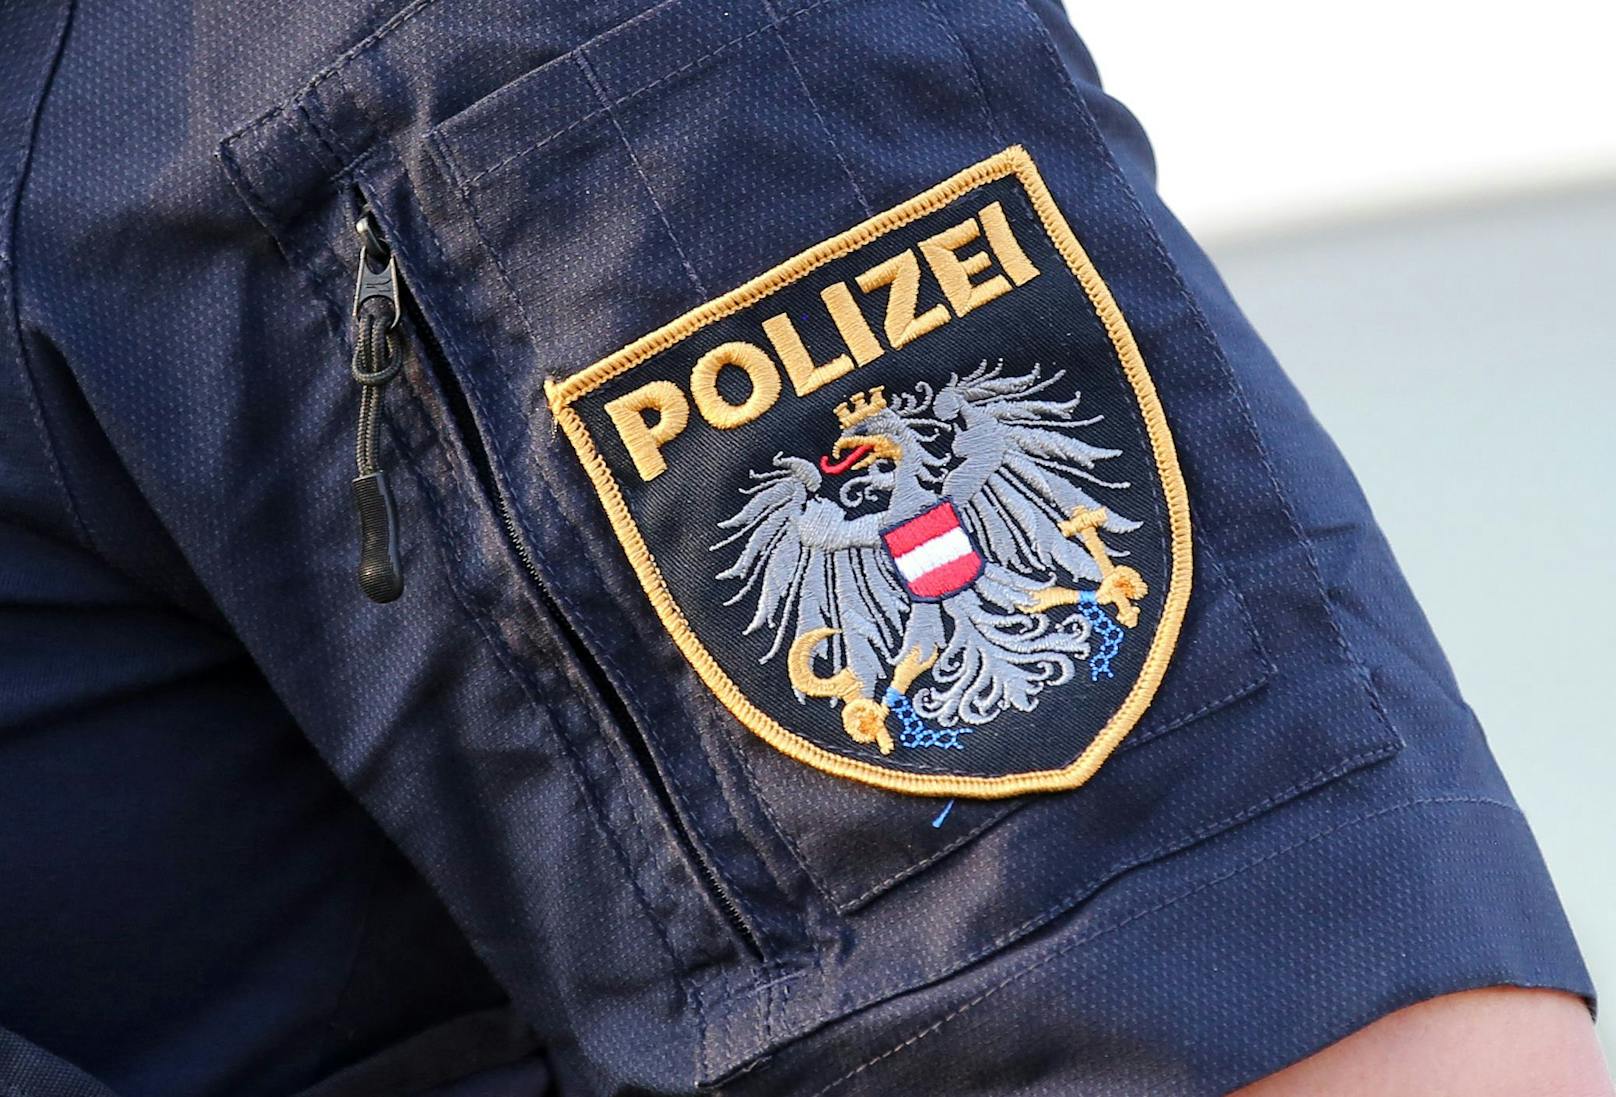 Die Polizei fand die Familie in einem Lkw bei einer Grenzkontrolle in Kärnten.